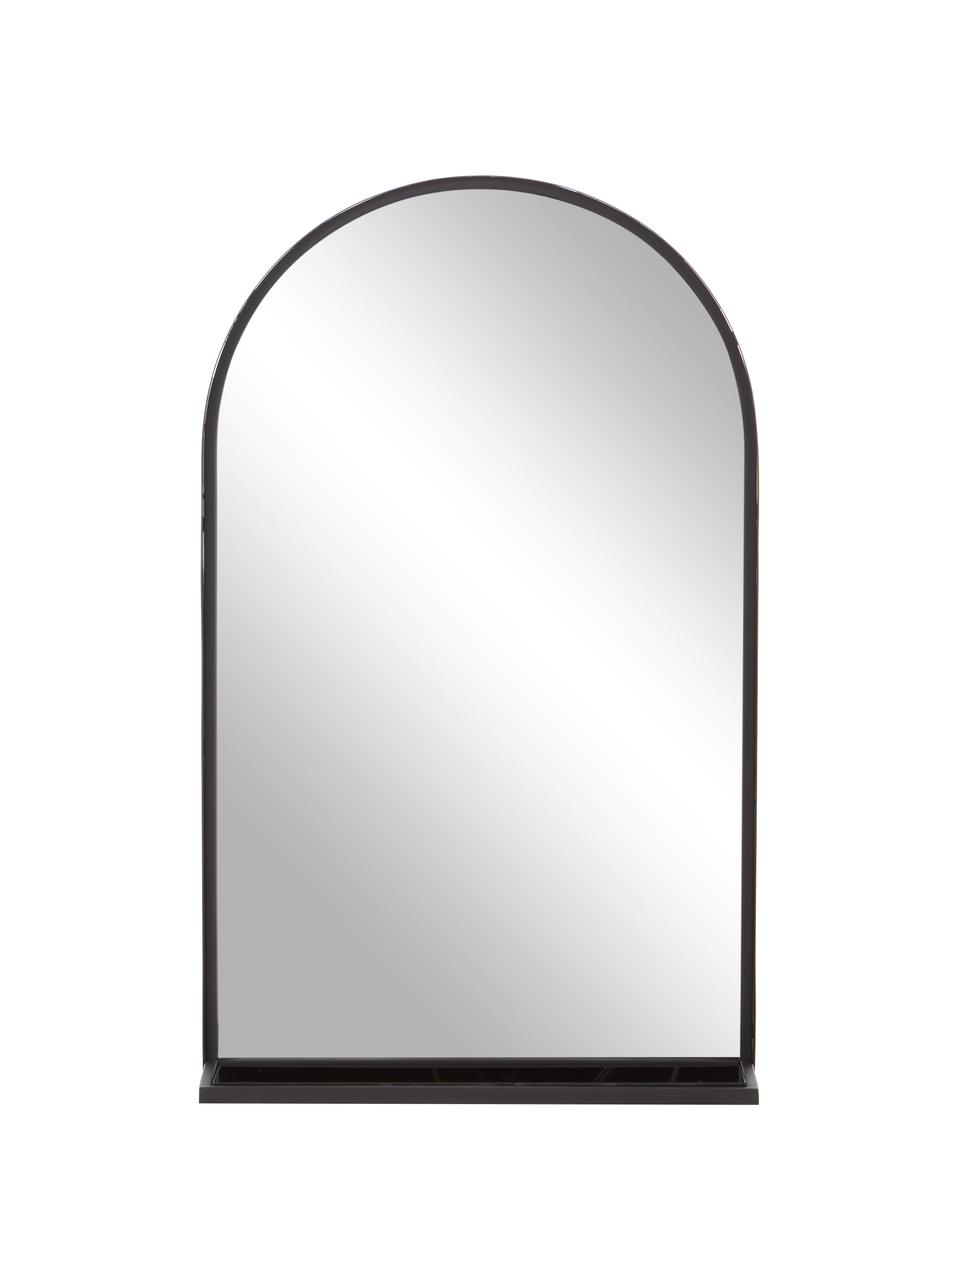 Specchio con mensola e cornice in metallo Grisell, Cornice: metallo rivestito, Superficie: vetro, Superficie dello specchio: lastra di vetro, Nero, Larg. 46 x Alt. 77 cm